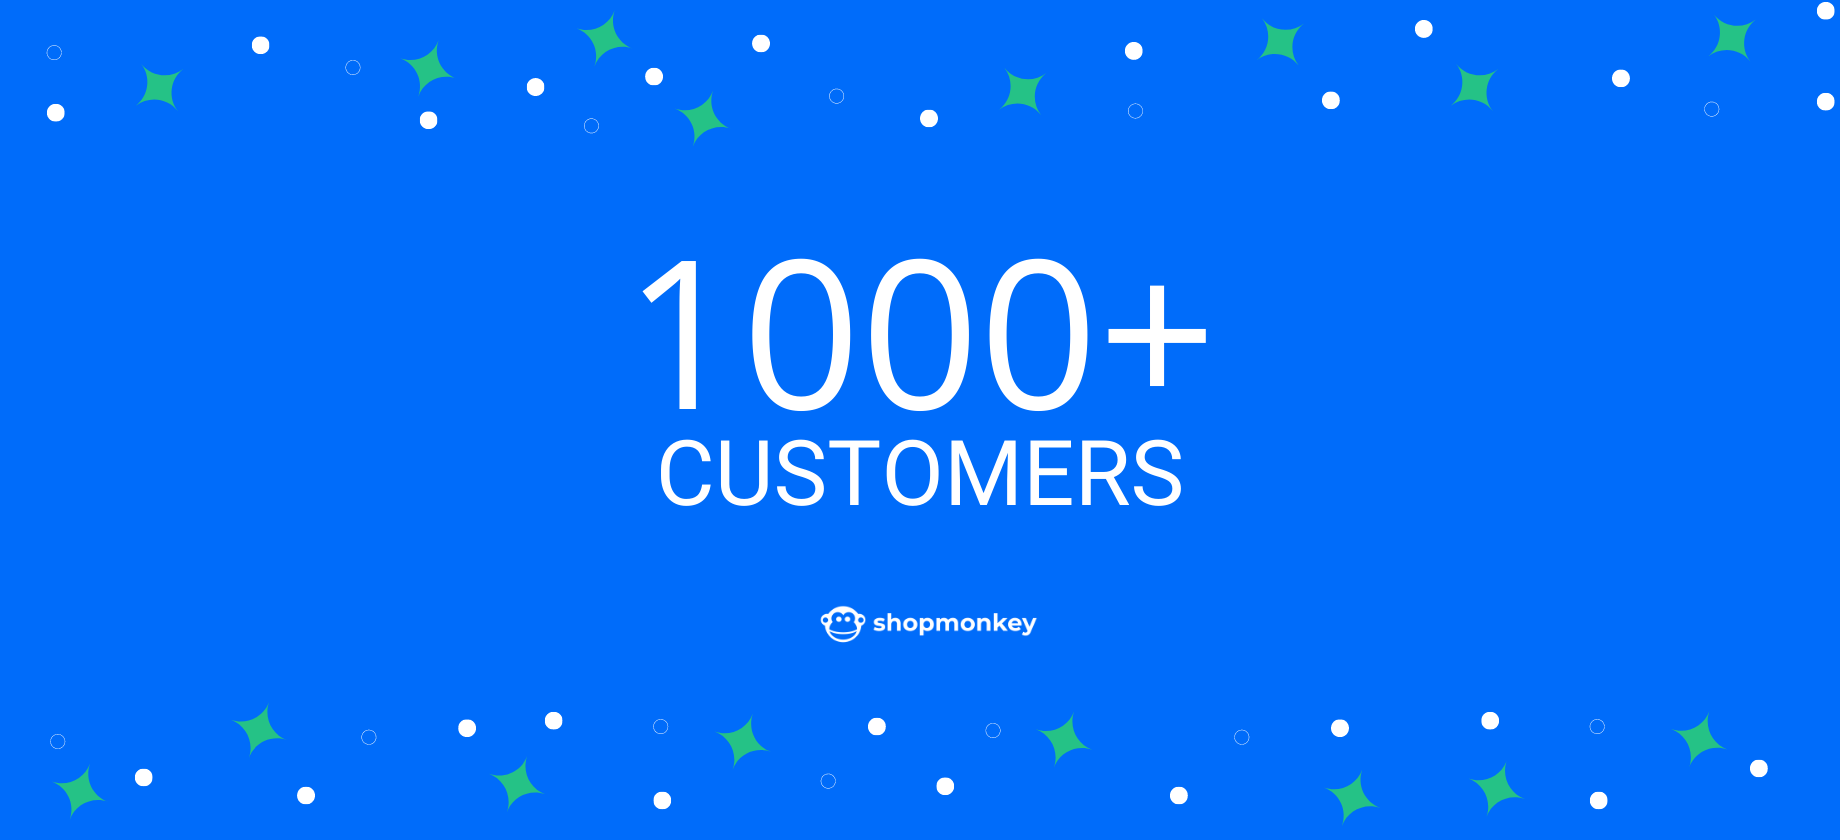 Celebrating Over 1,000 Shopmonkey Customers Article Image